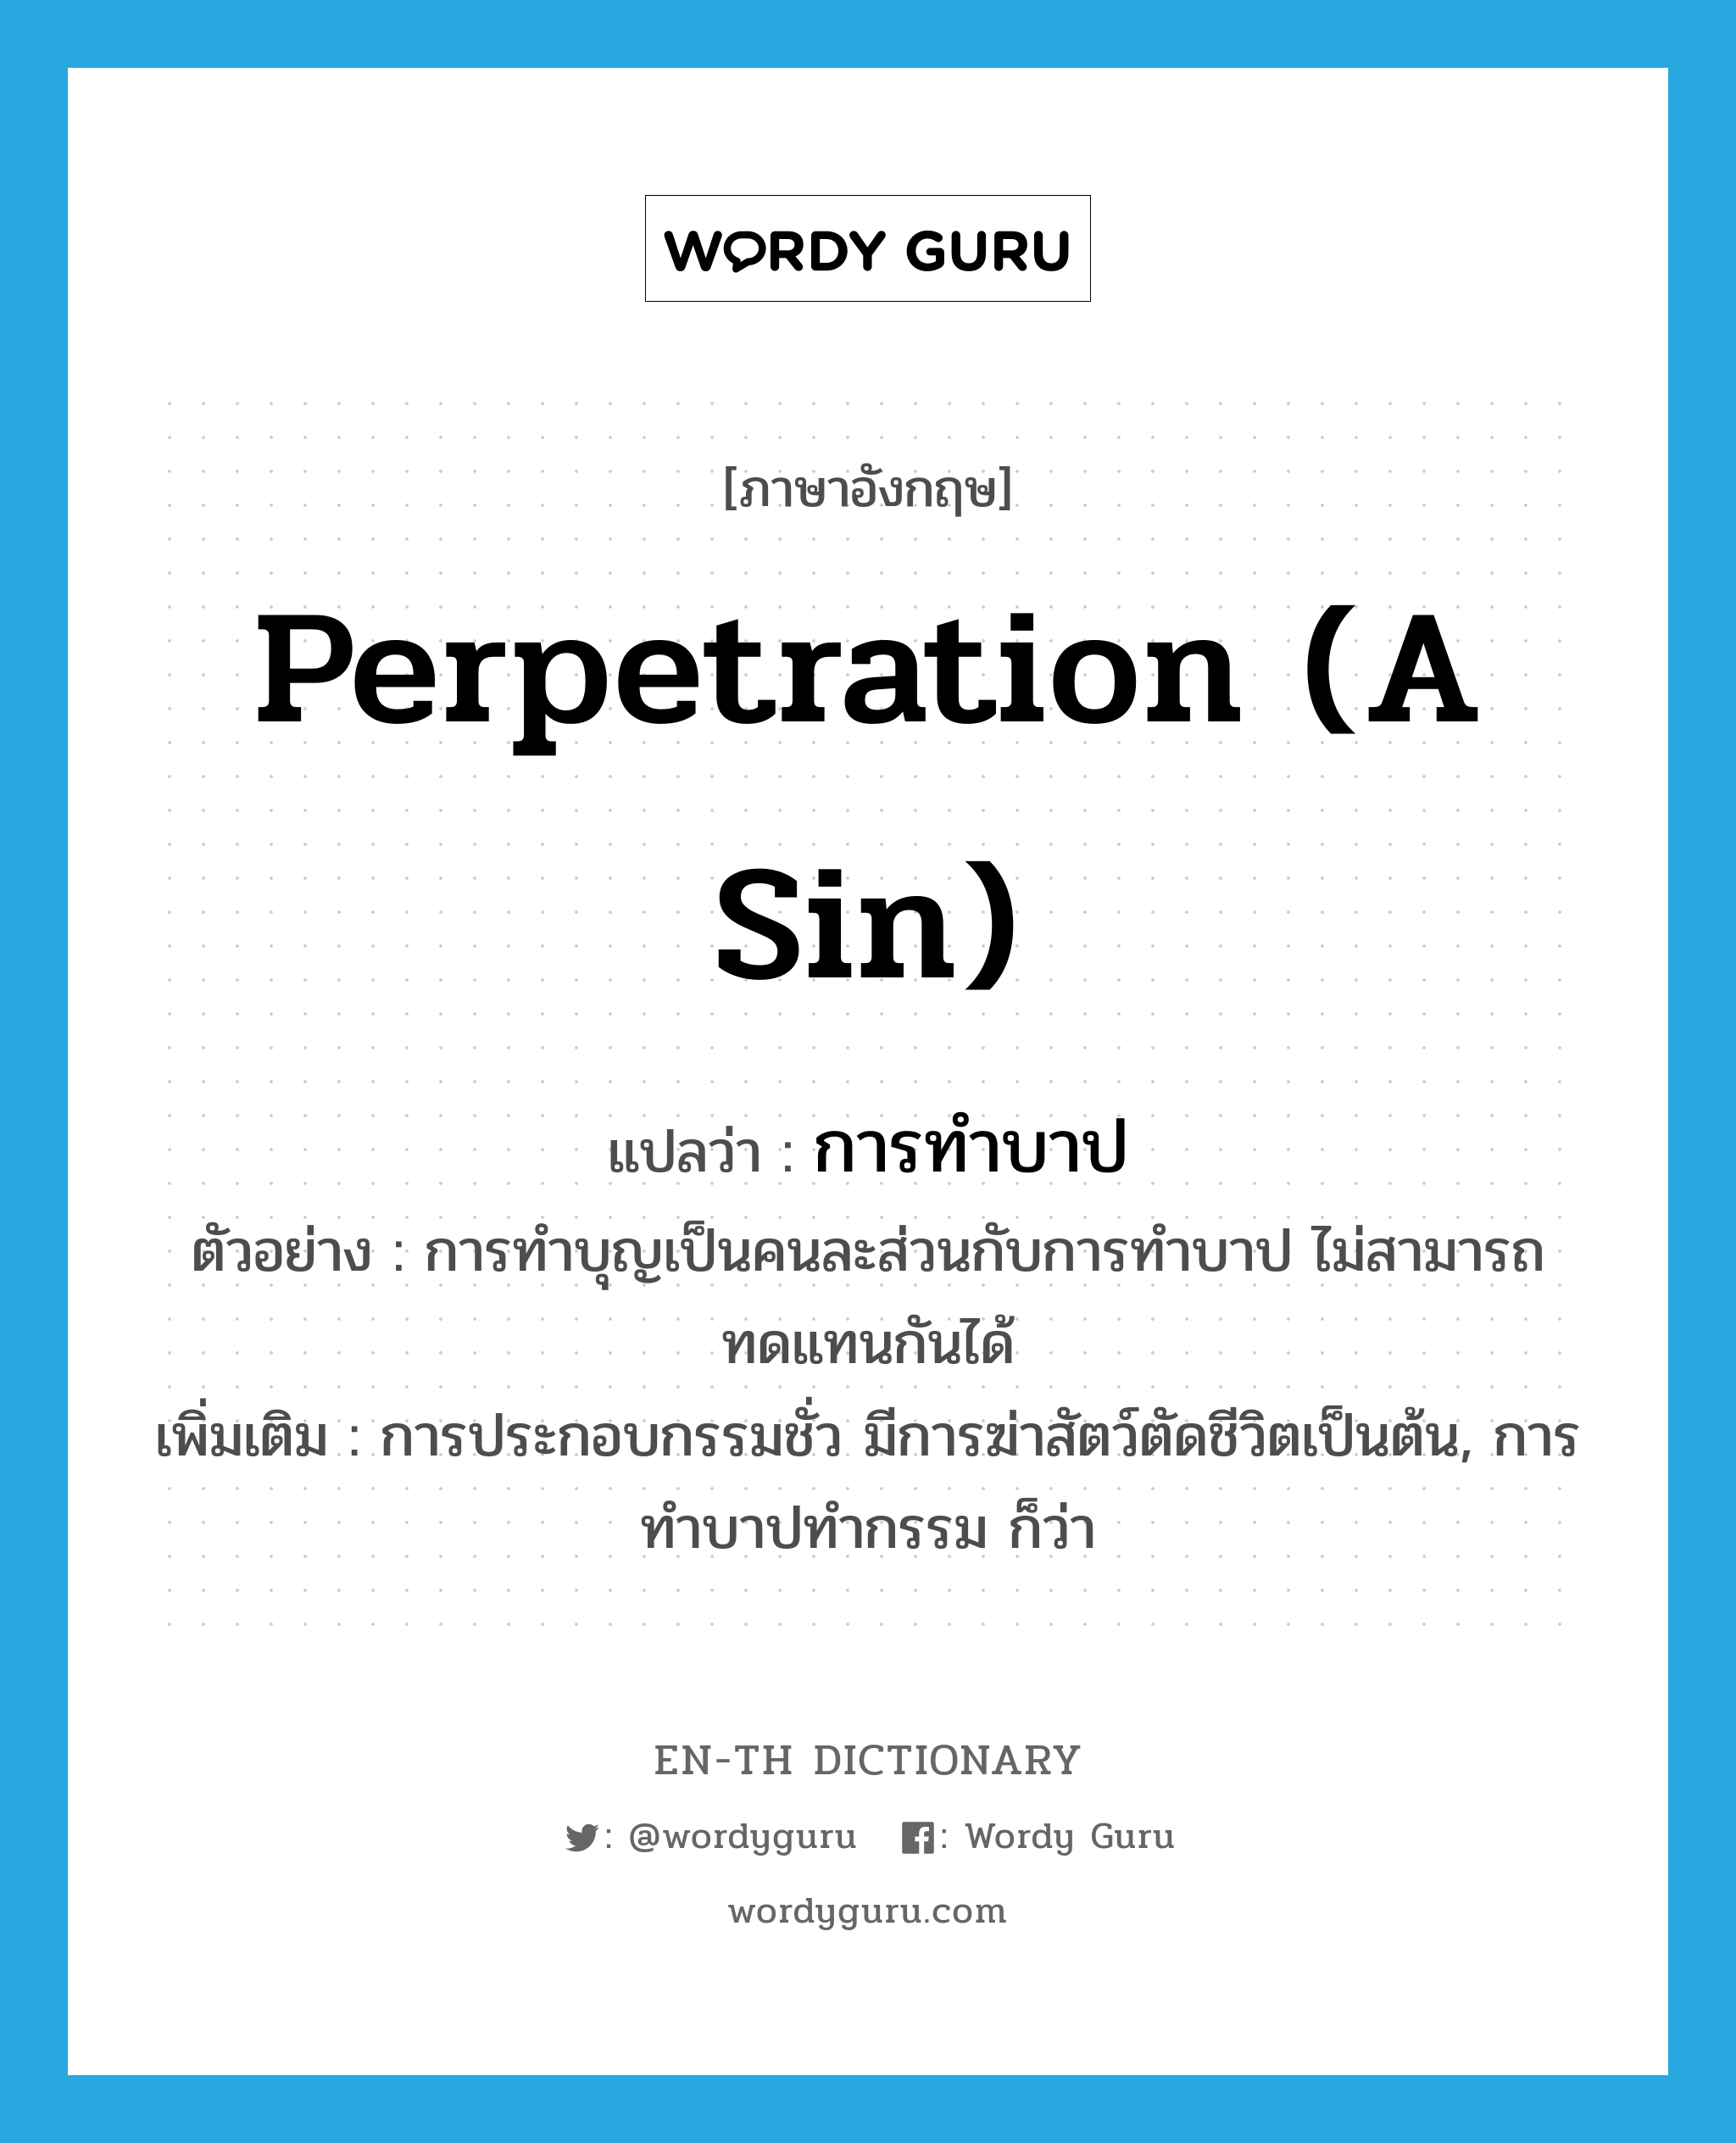 perpetration (a sin) แปลว่า?, คำศัพท์ภาษาอังกฤษ perpetration (a sin) แปลว่า การทำบาป ประเภท N ตัวอย่าง การทำบุญเป็นคนละส่วนกับการทำบาป ไม่สามารถทดแทนกันได้ เพิ่มเติม การประกอบกรรมชั่ว มีการฆ่าสัตว์ตัดชีวิตเป็นต้น, การทำบาปทำกรรม ก็ว่า หมวด N